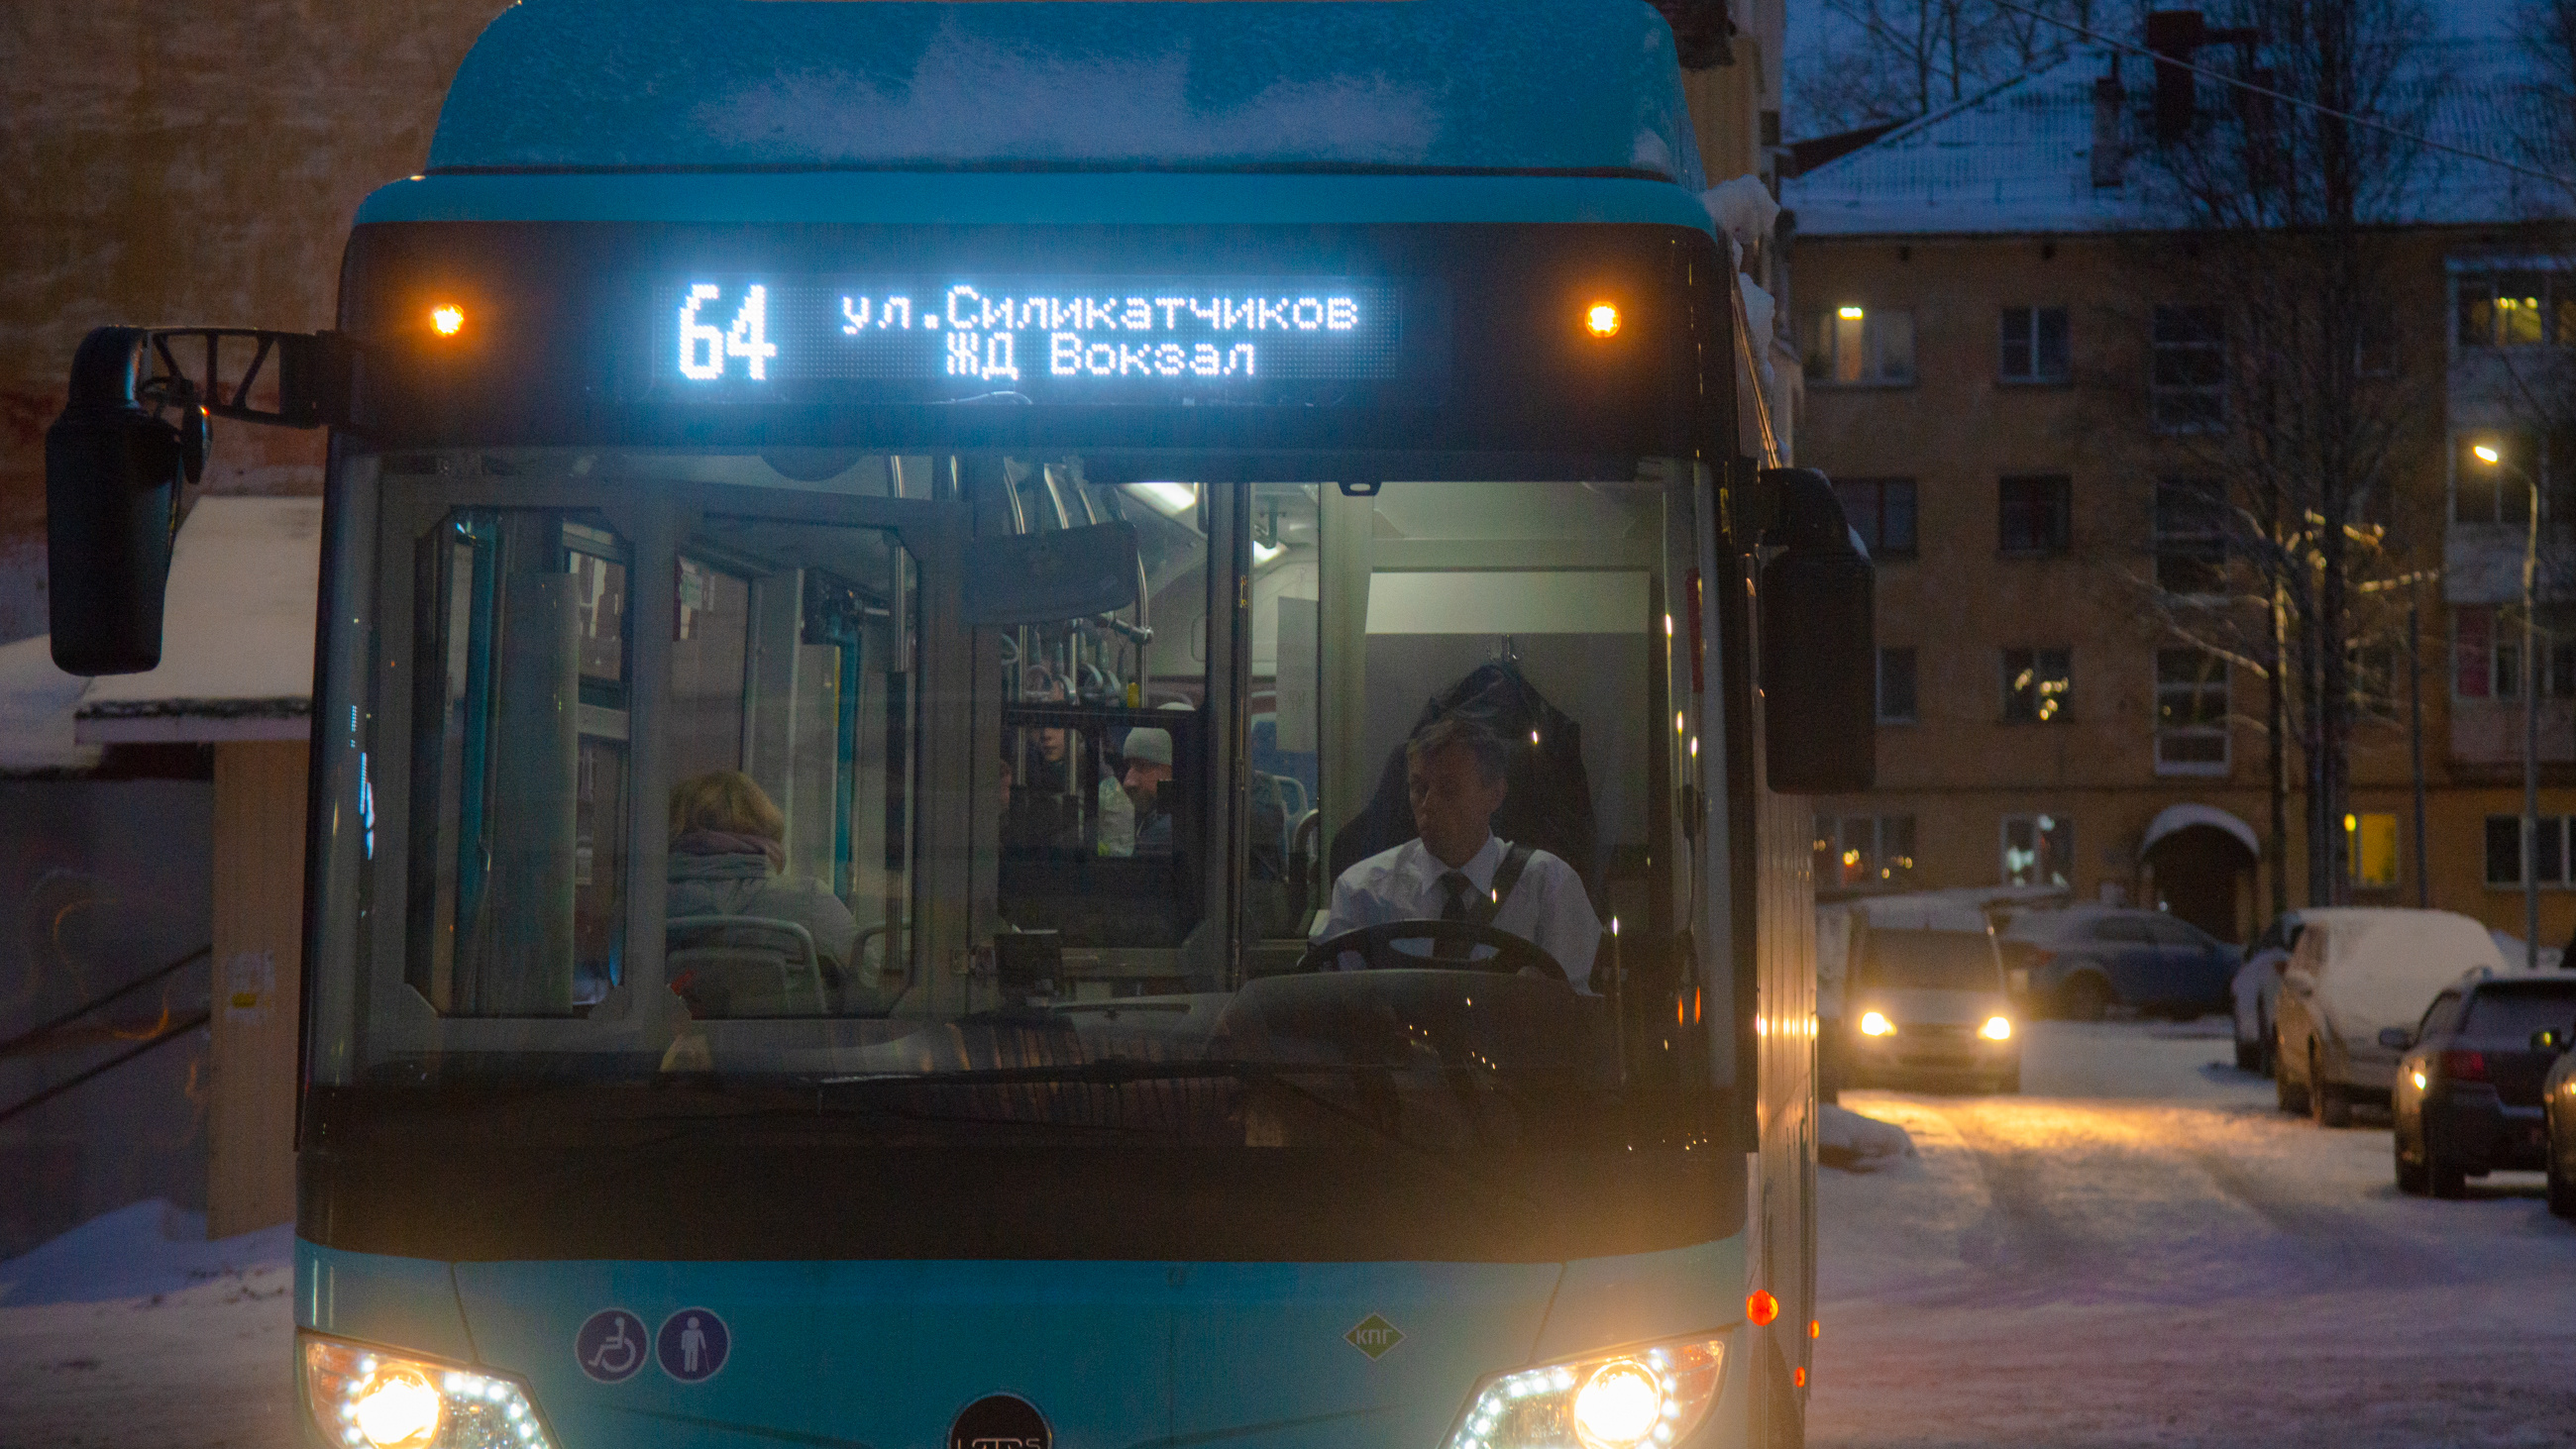 От 2 тысяч рублей за смену: на какие зарплаты набирают в Архангельске сотрудников для новых автобусов